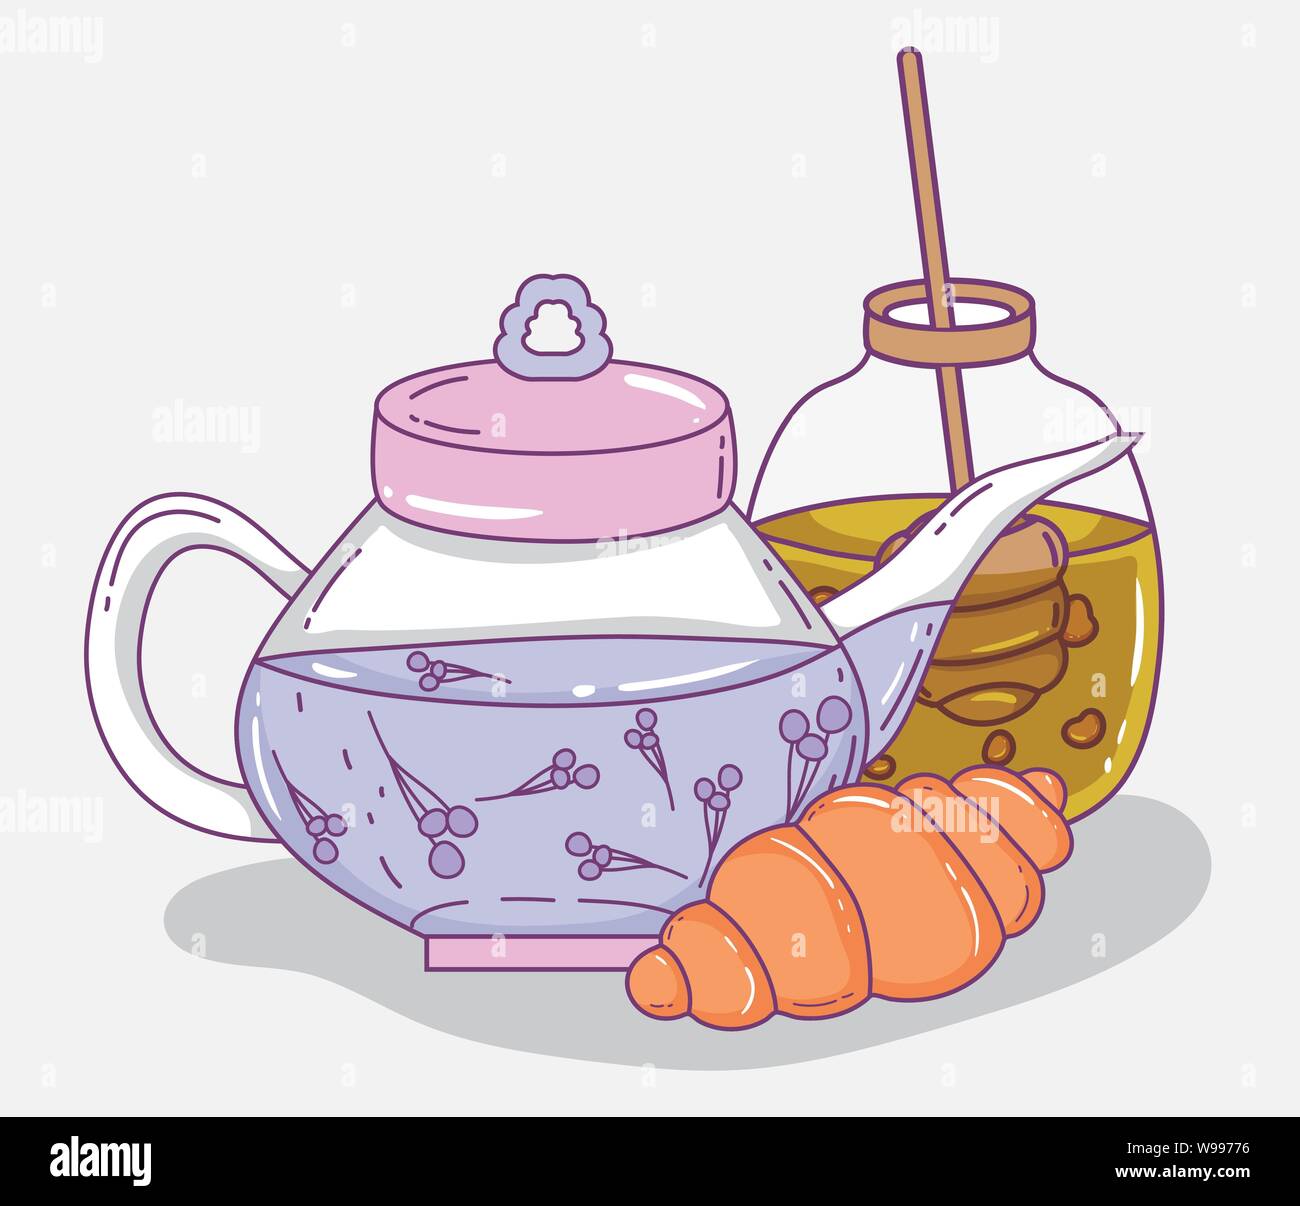 Wasserkocher Tee Honig und Croissant Skizze flache Design Vector Illustration Stock Vektor